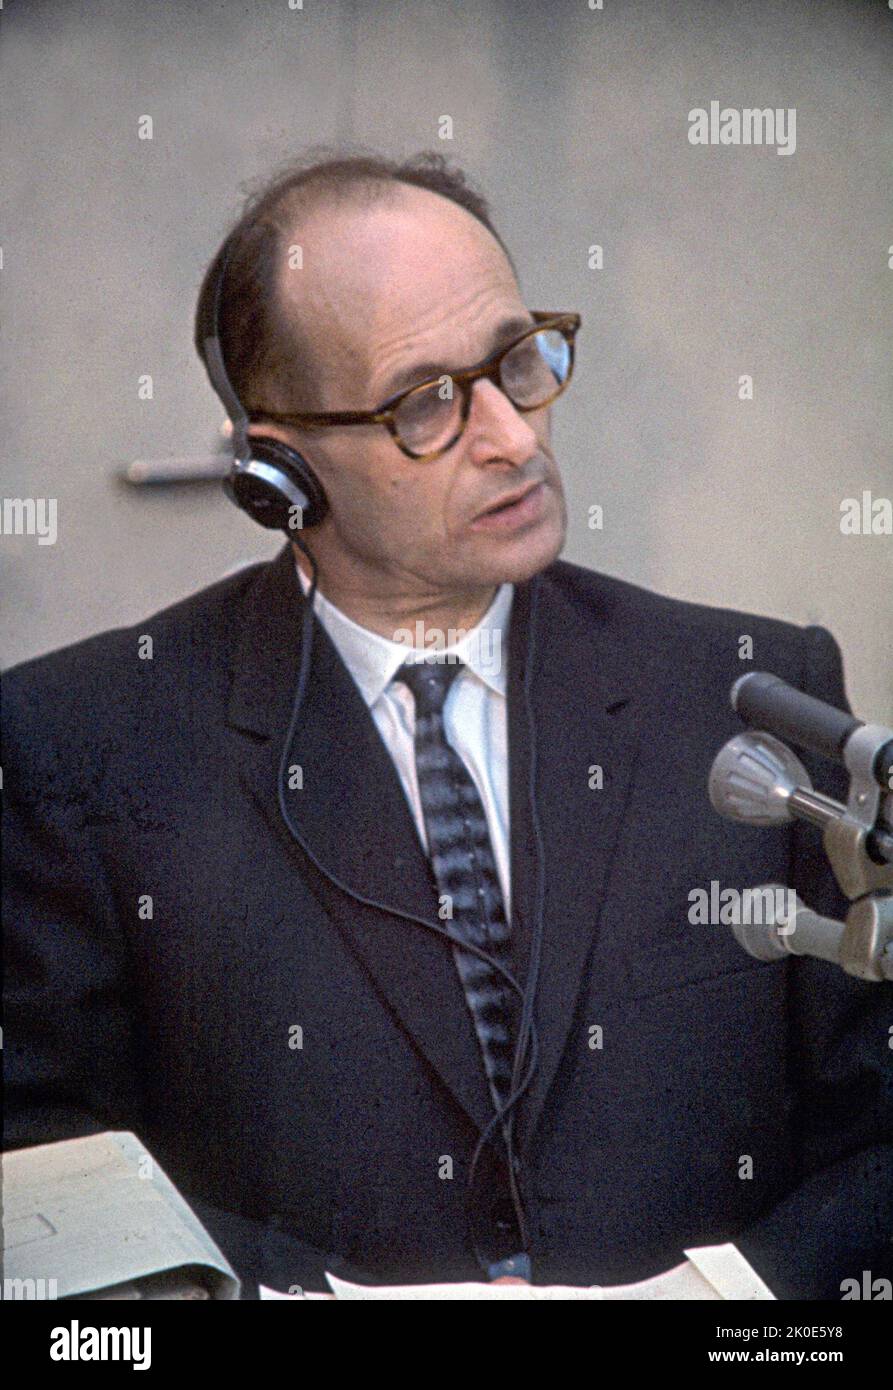 Juicio de Adolf Eichmann en Israel 1962. Eichmann (1906 - 1 de junio de 1962) fue un Obersturmbannfuhrer alemán-austríaco de las SS y uno de los principales organizadores del Holocausto (la 'Solución Final a la Cuestión Judía' en terminología nazi). Eichmann fue declarado culpable de crímenes de guerra en un juicio ampliamente difundido en Jerusalén, donde fue ejecutado en la horca en 1962. Foto de stock